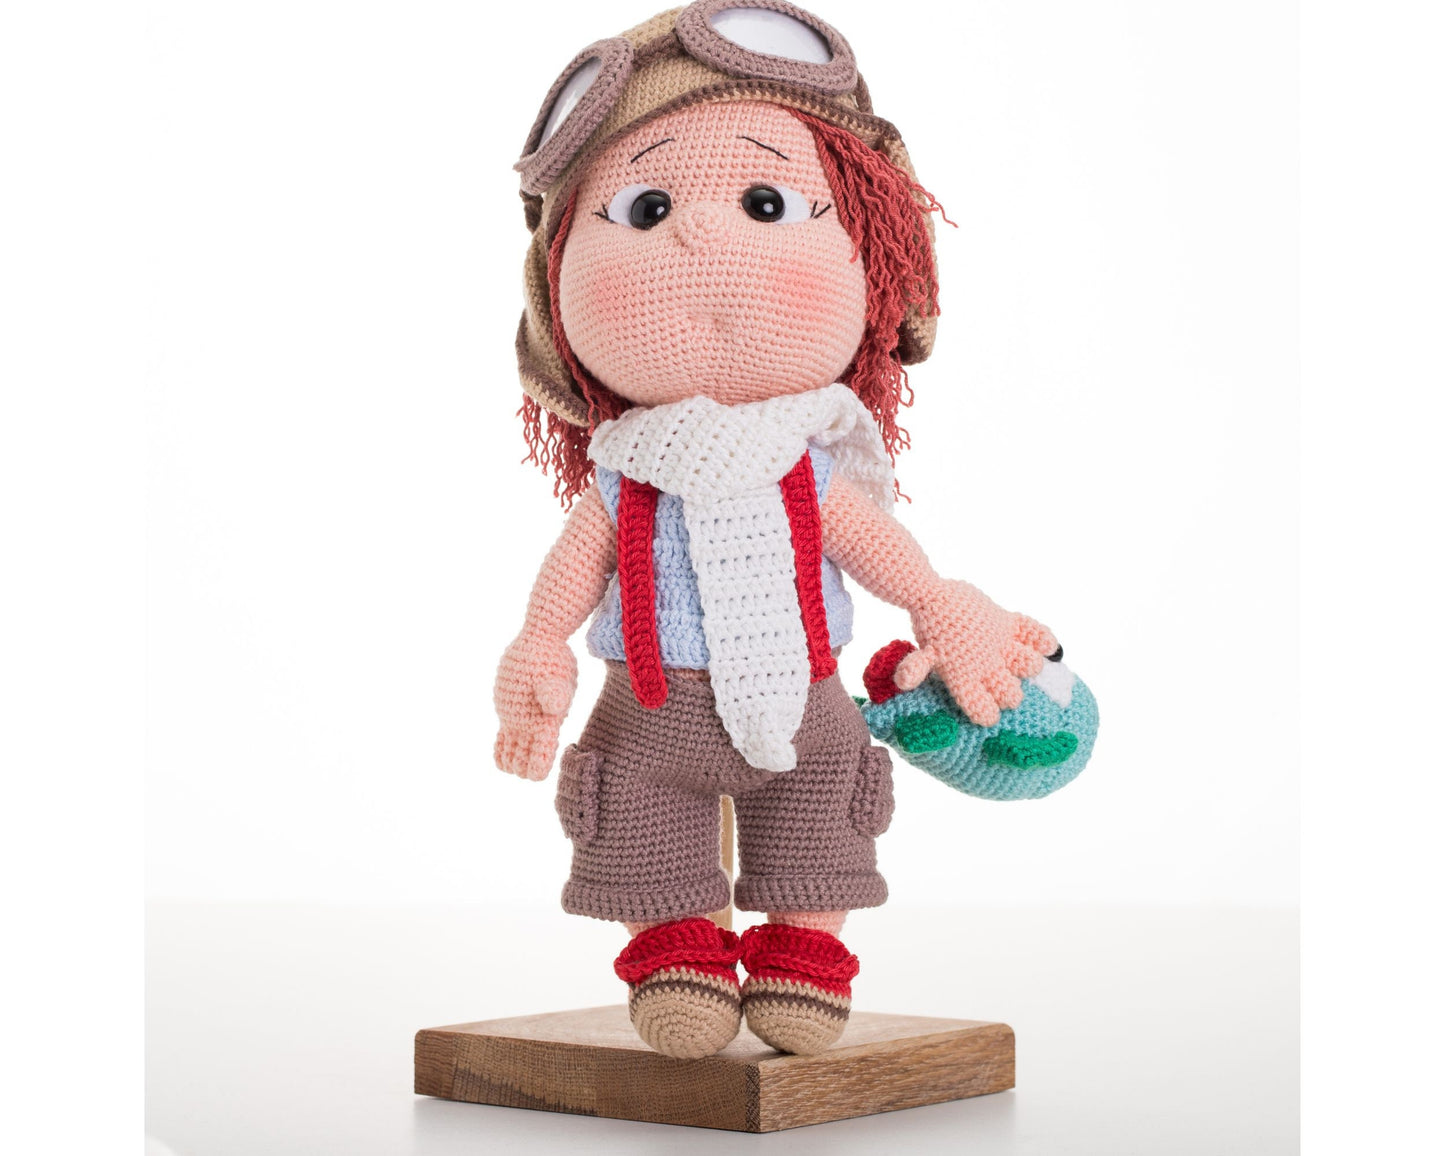 Crochet Doll Boy Pilot, Amigurumi Boy Doll, Knit Boy Doll, Toddler Gift